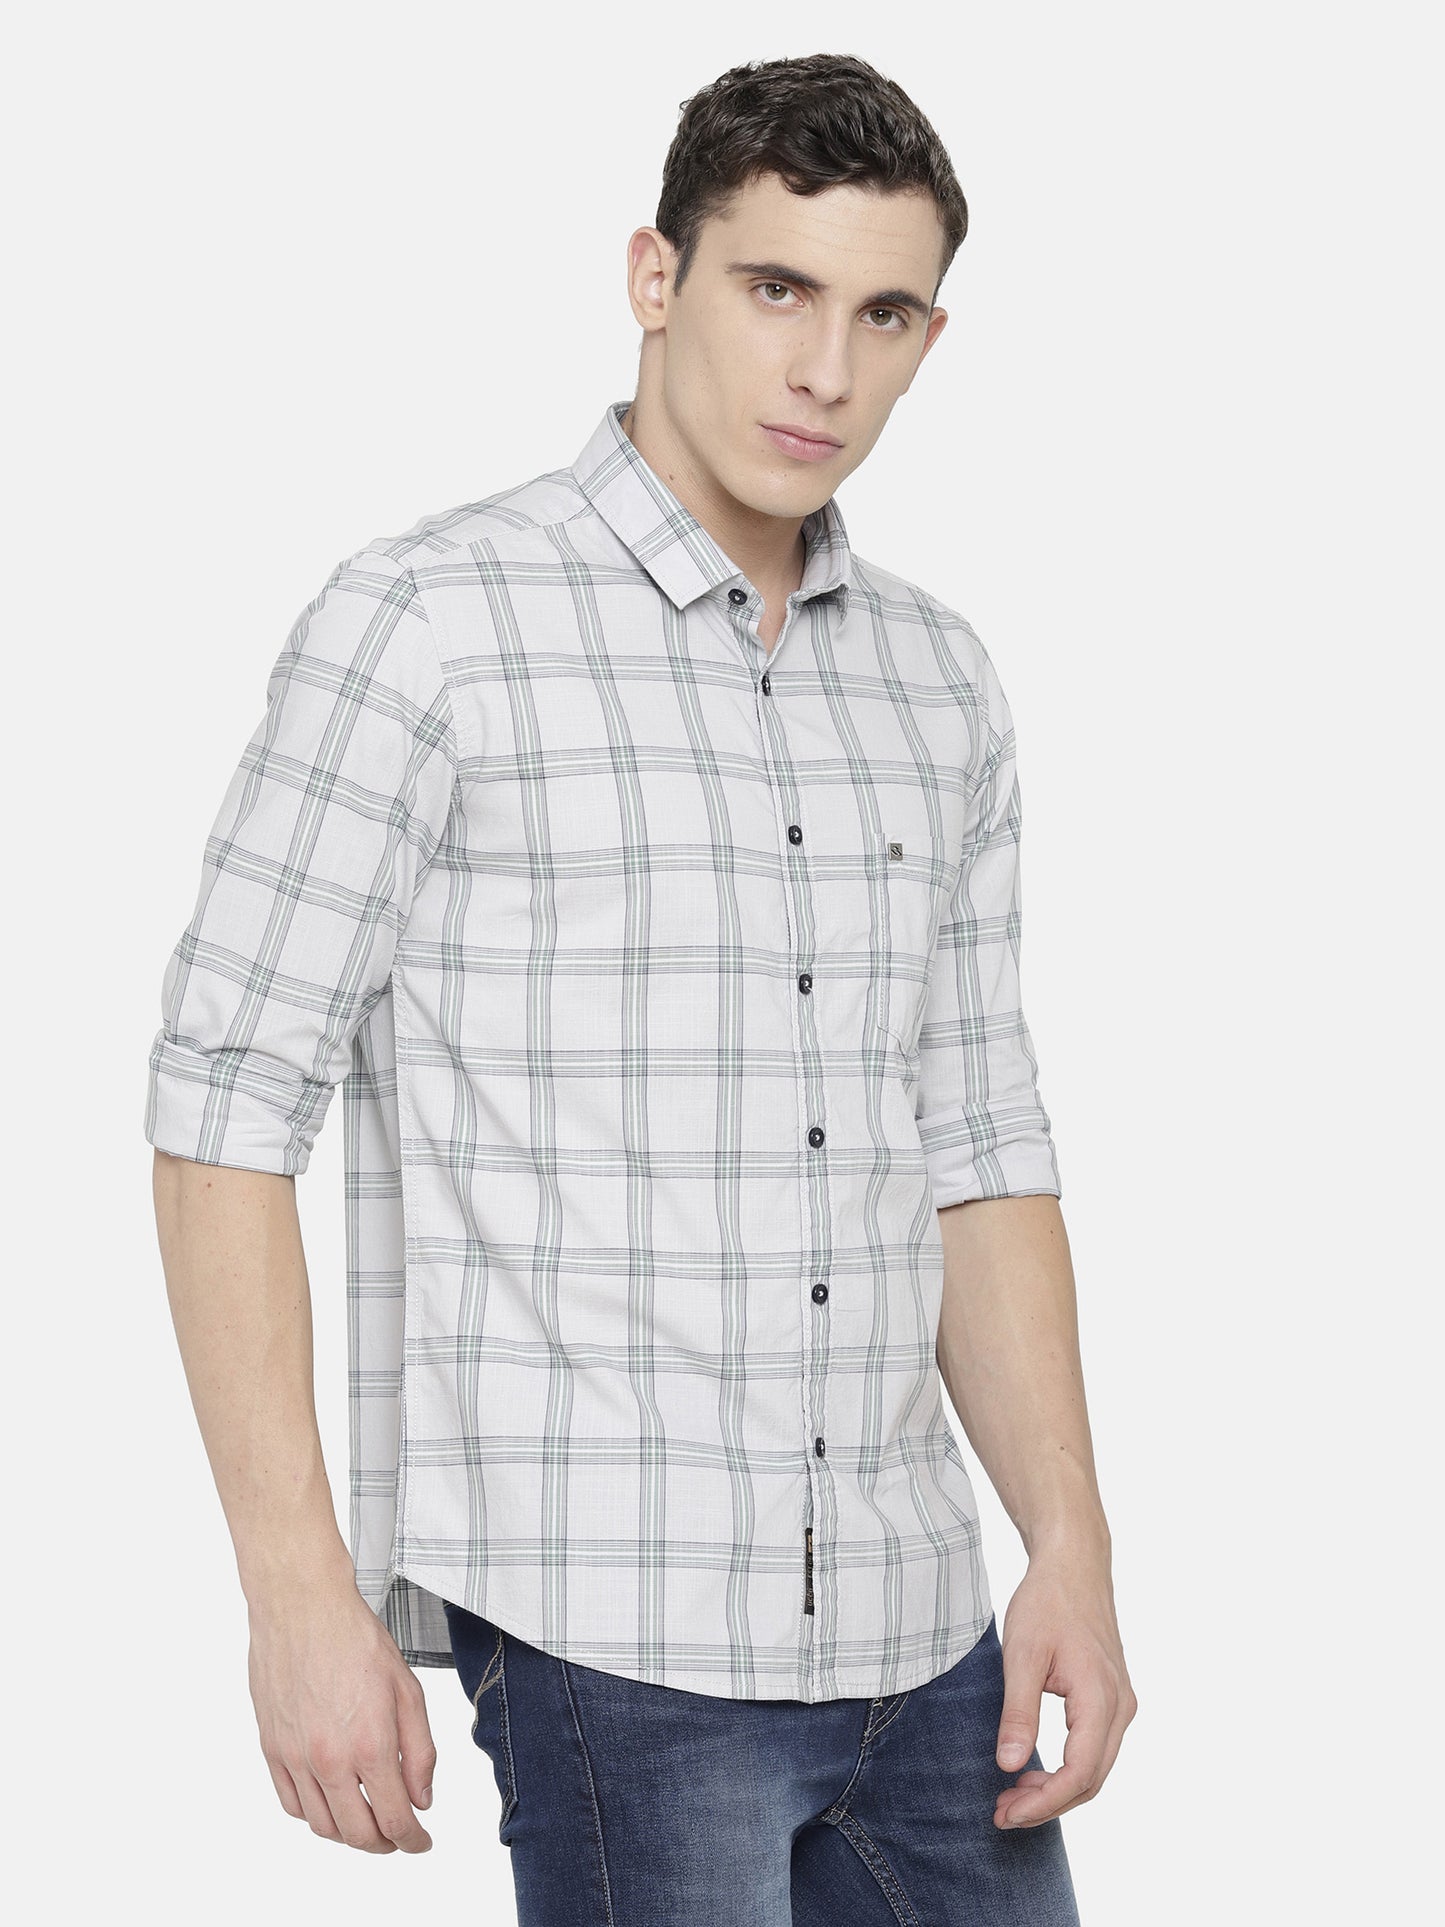 White and Grey Checkered Shirt